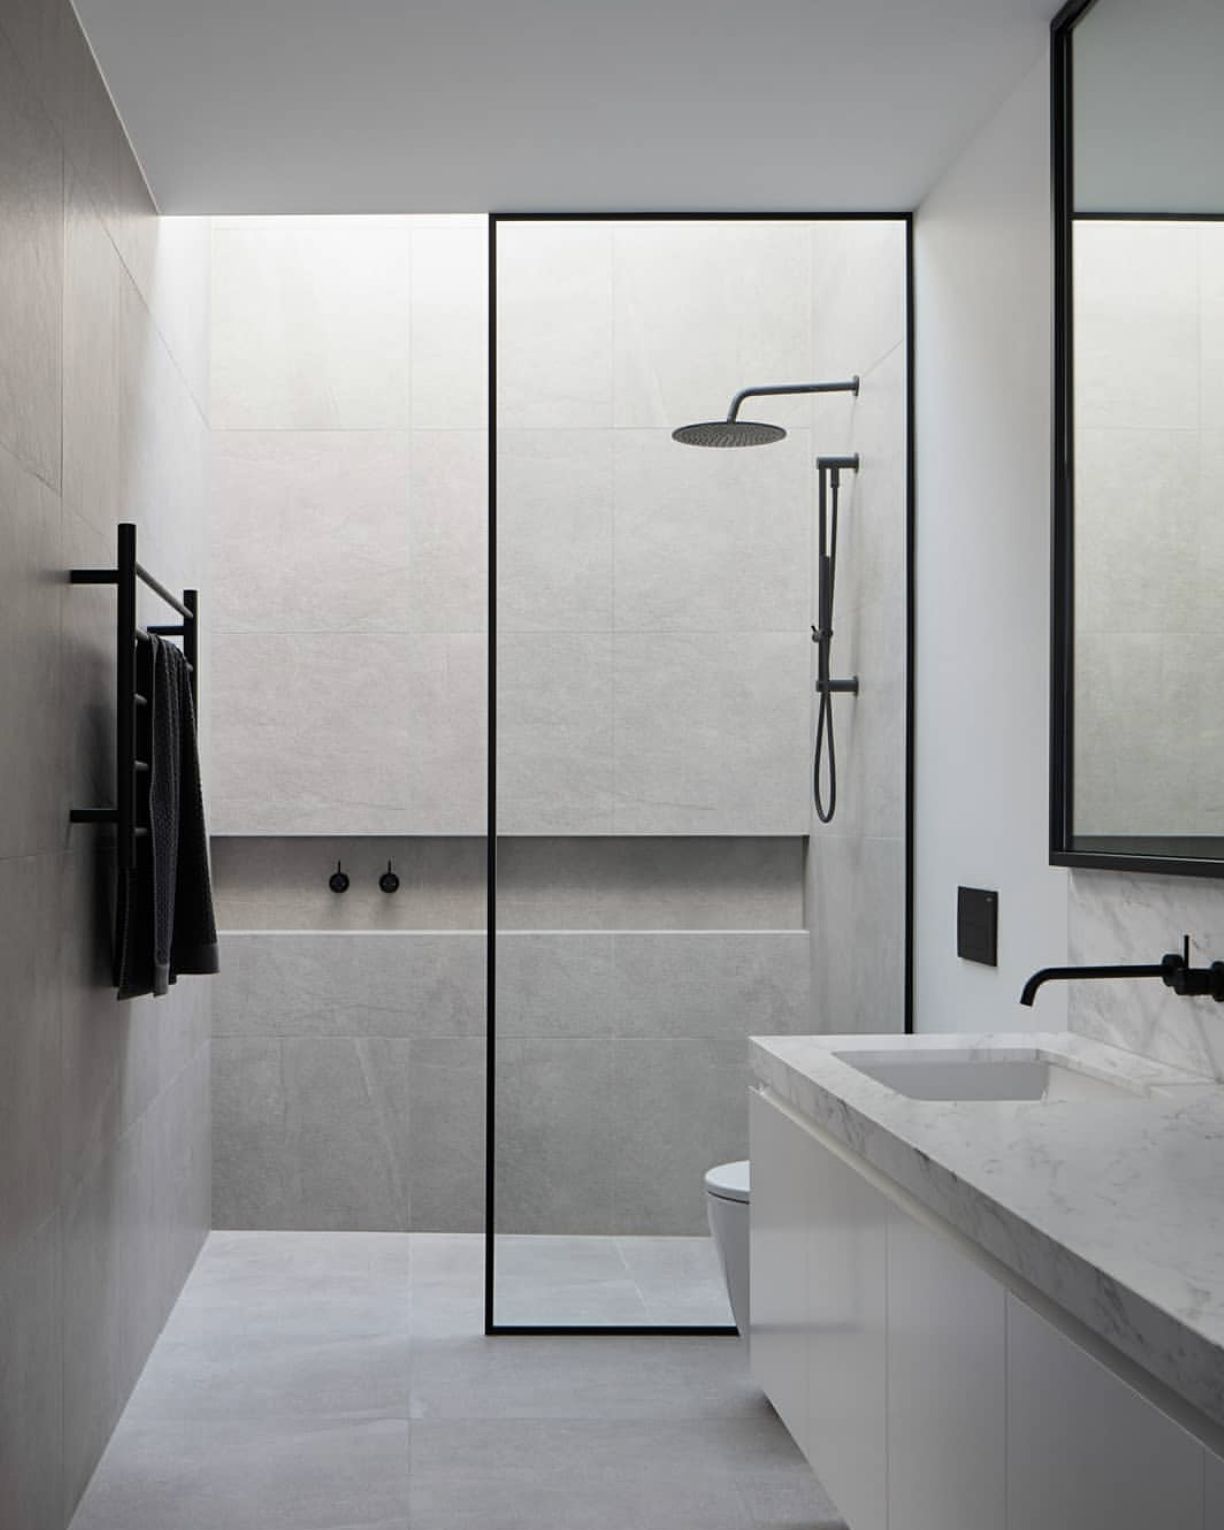 на фото зображено варіант інтер'єру ванної кімнати з облицюванням плиткою стін в області душової кабіни